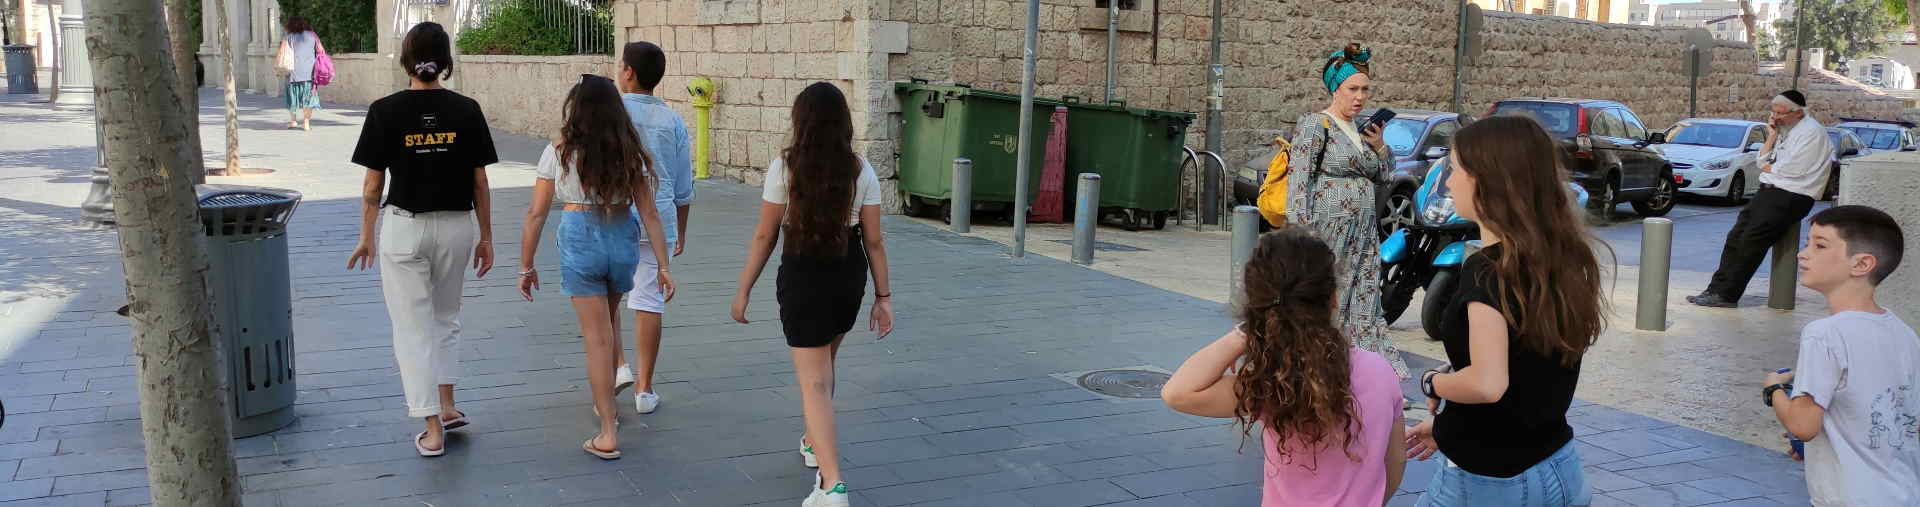 ילדות משתתפות בסיור גרפיטי בירושלים